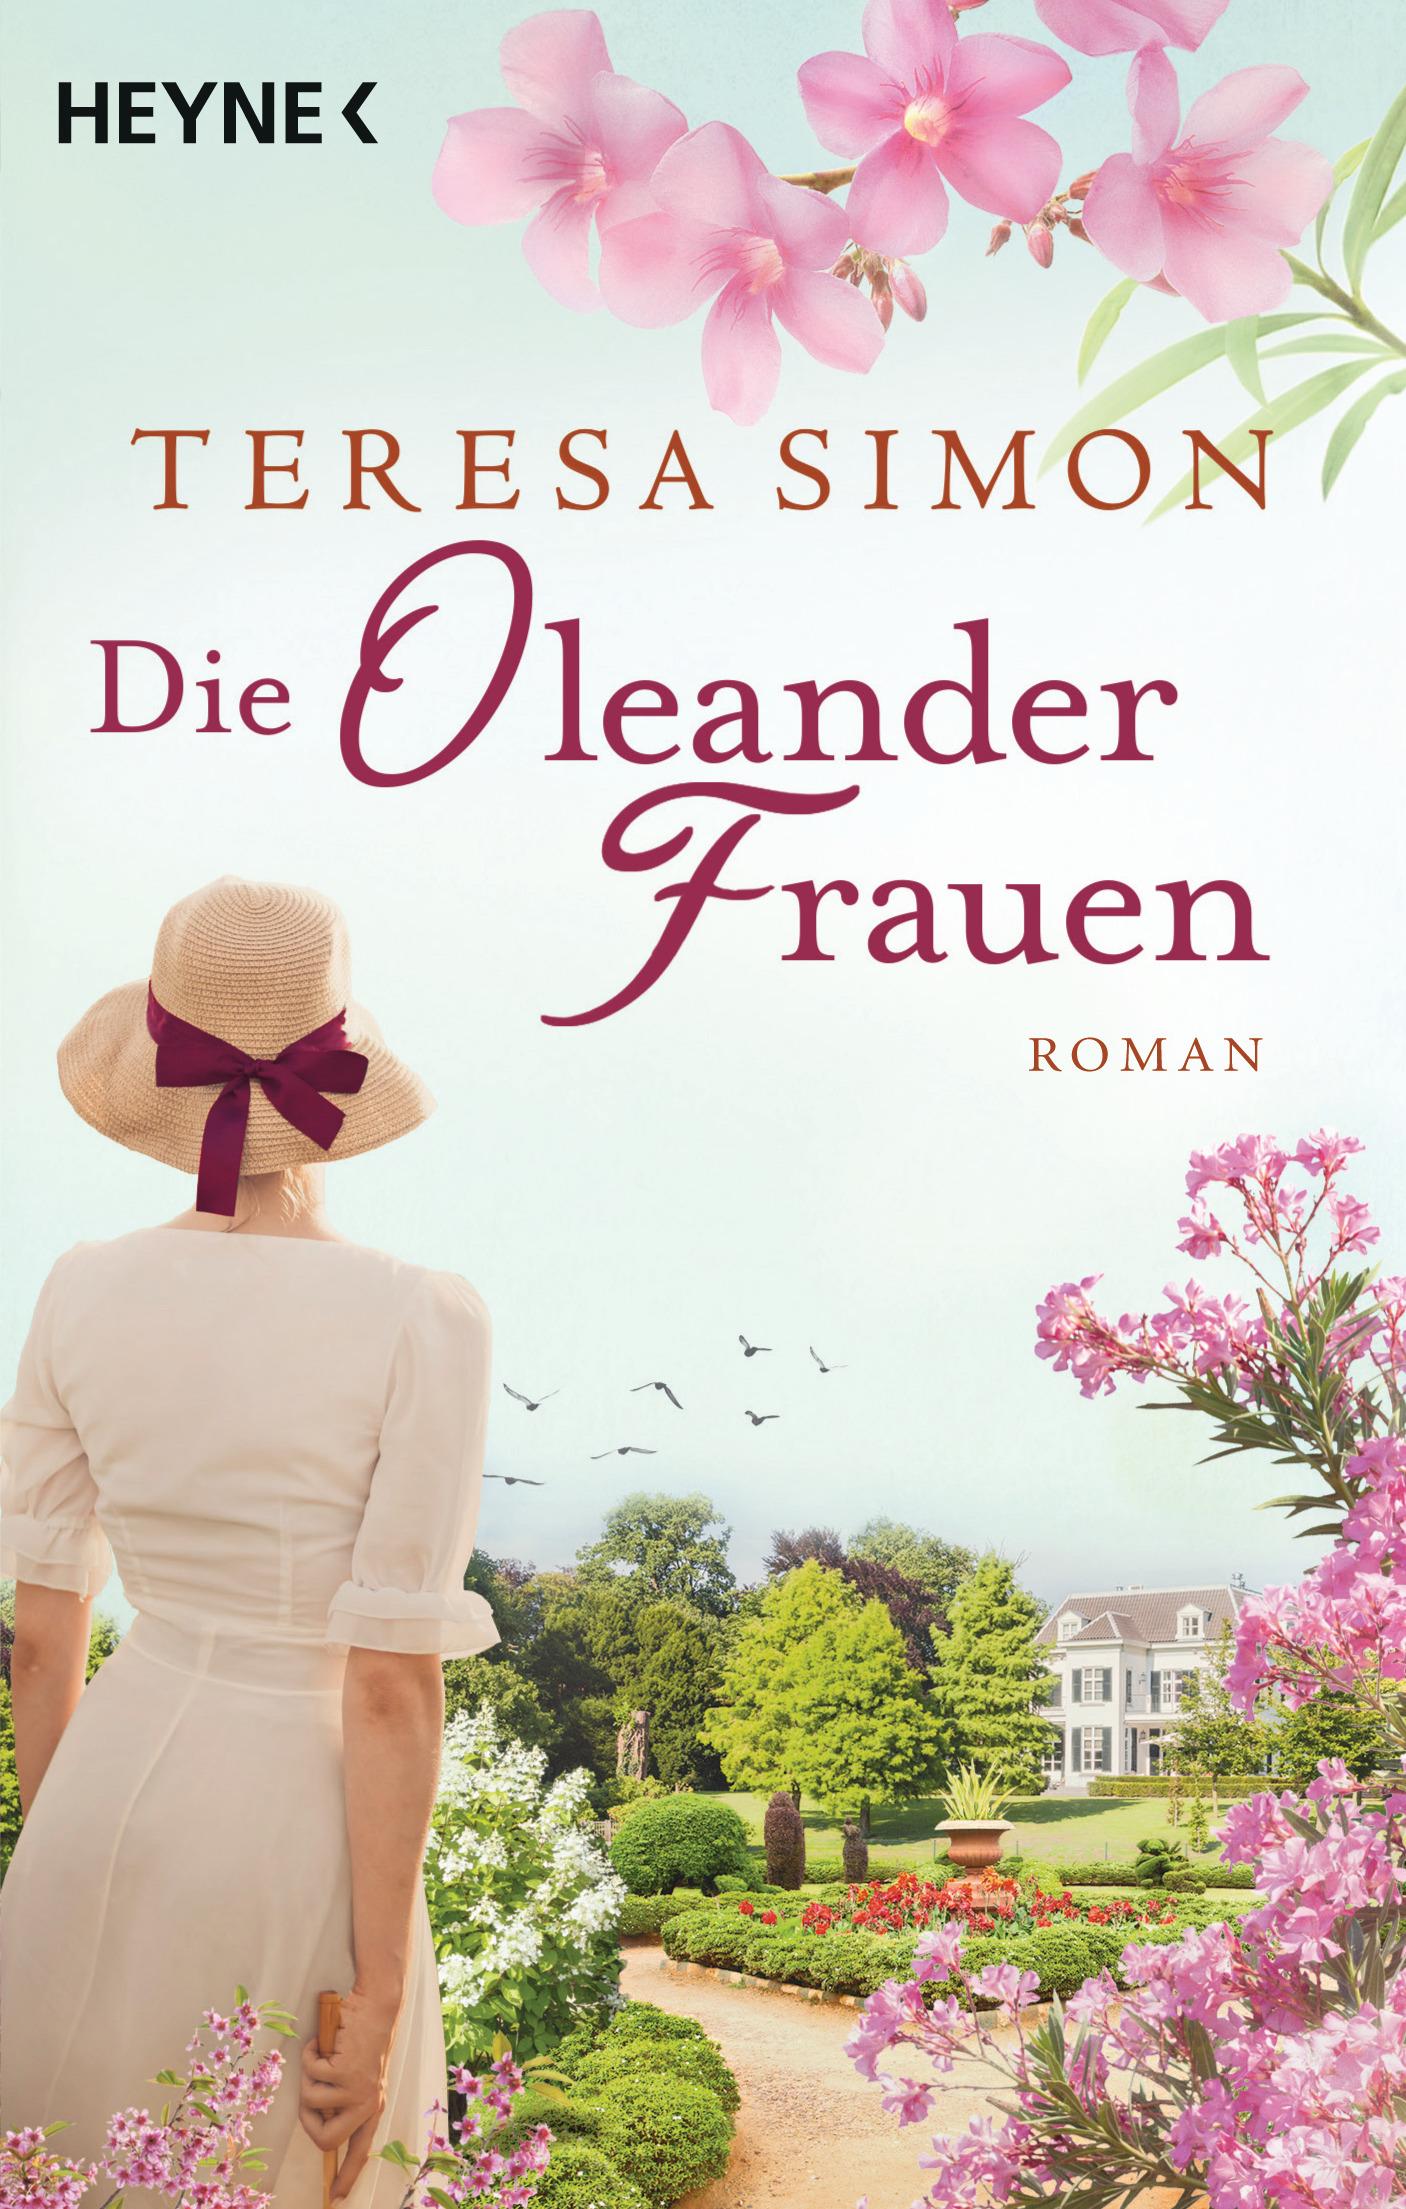 Die Oleanderfrauen von Teresa Simon © Heyne Verlag